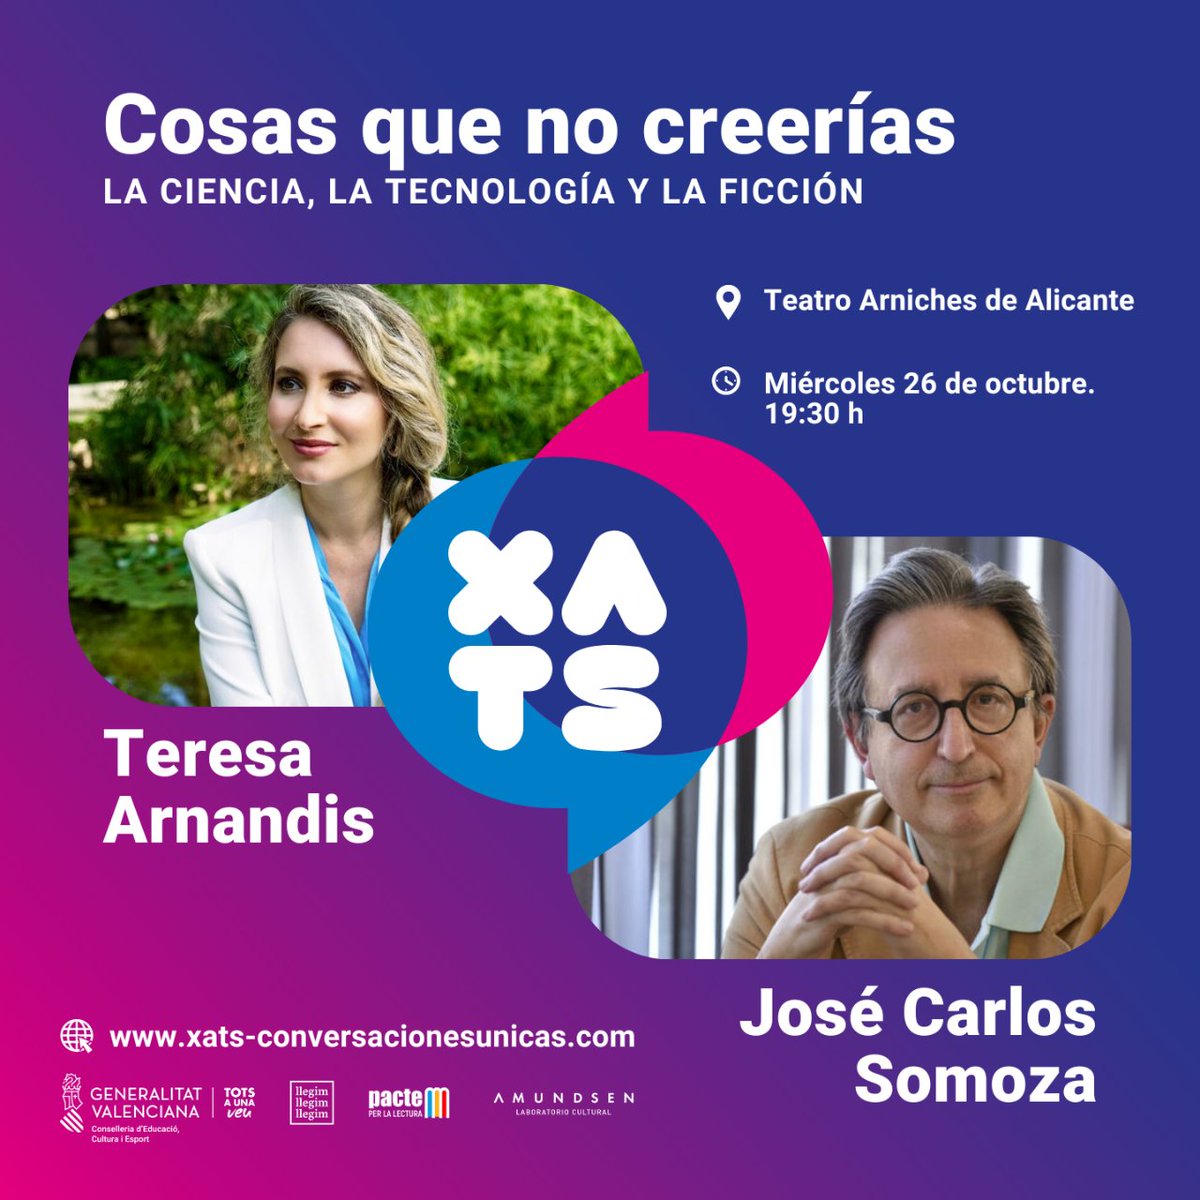 📣 ¡Segundo round de XATS conversaciones únicas! 👥 Con @LadyScience_   y @JoseCarloSomoza   💡 “Cosas que no creerías” 🗓 26 de octubre a las 19:30h 📍 Teatro Arniches de Alicante 🎟 Entrada libre #Xats #generalitatvalenciana #totsaunaveu #pacteperlalectura #charlas #foros